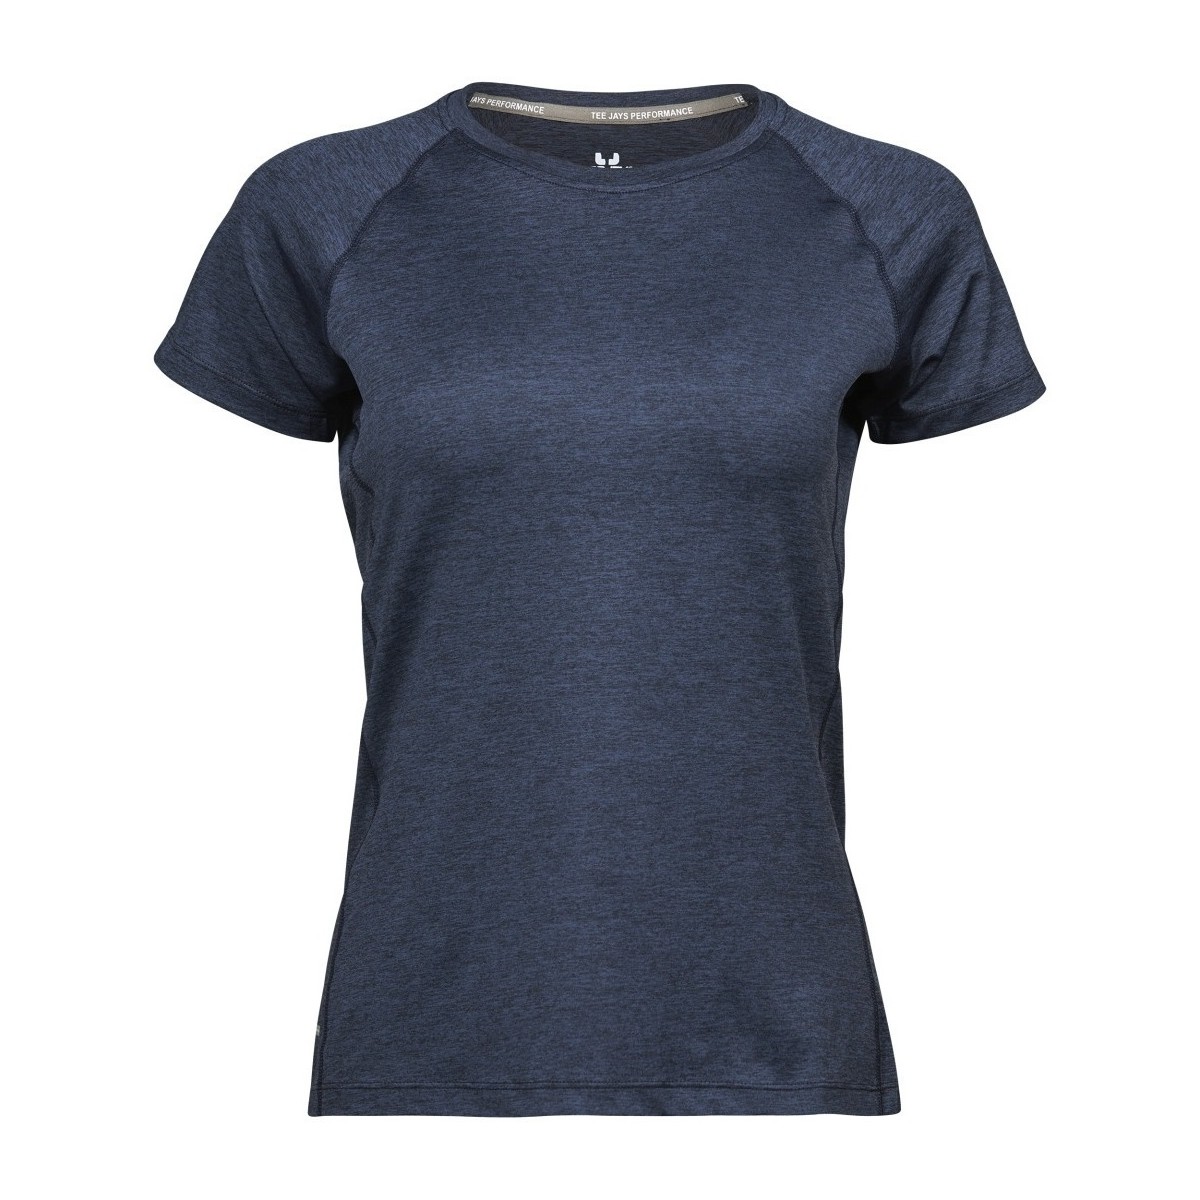 textil Mujer Camisetas manga corta Tee Jays Cool Dry Azul